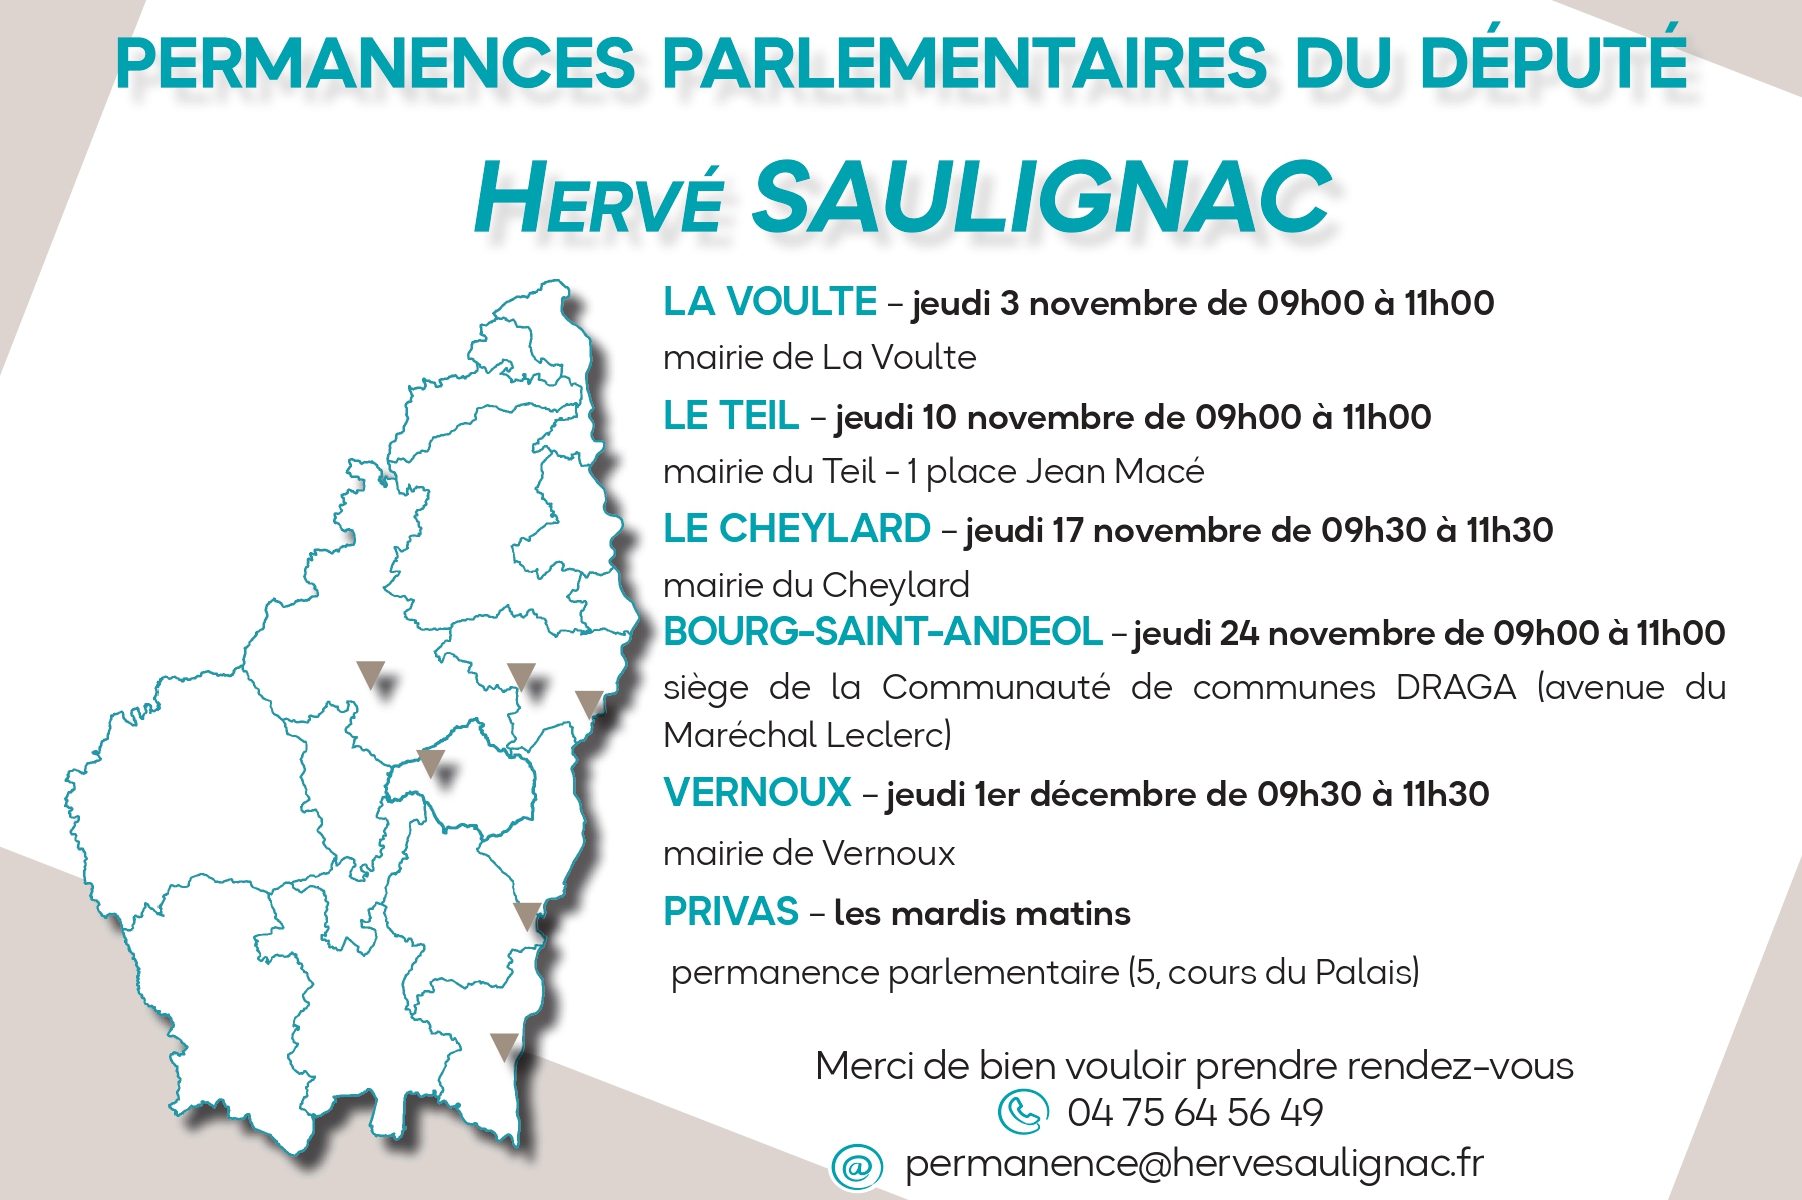 Le Député Hervé Saulignac organise des permanences sur la circonscription à l'attention des particuliers et des forces vives de vos communes. Je vous prie de trouver ci-joint les dates des prochaines permanences.